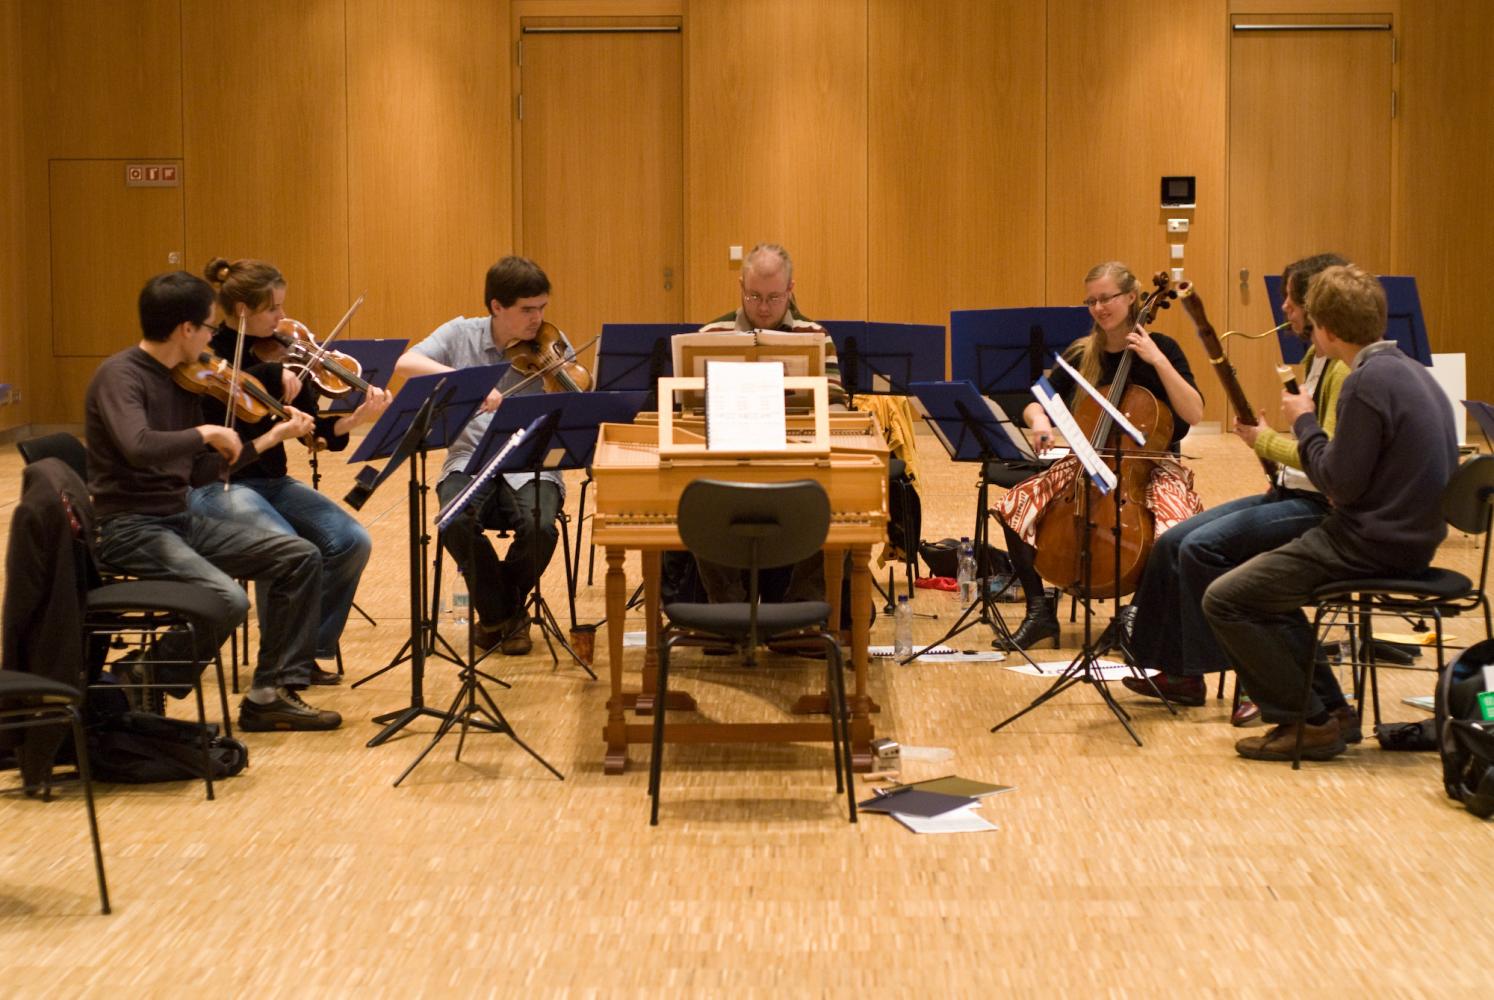 Sept musiciens travaillent ensemble pour le plaisir après les répétitions de l'orchestre. Echternach, Luxembourg, octobre 2009.